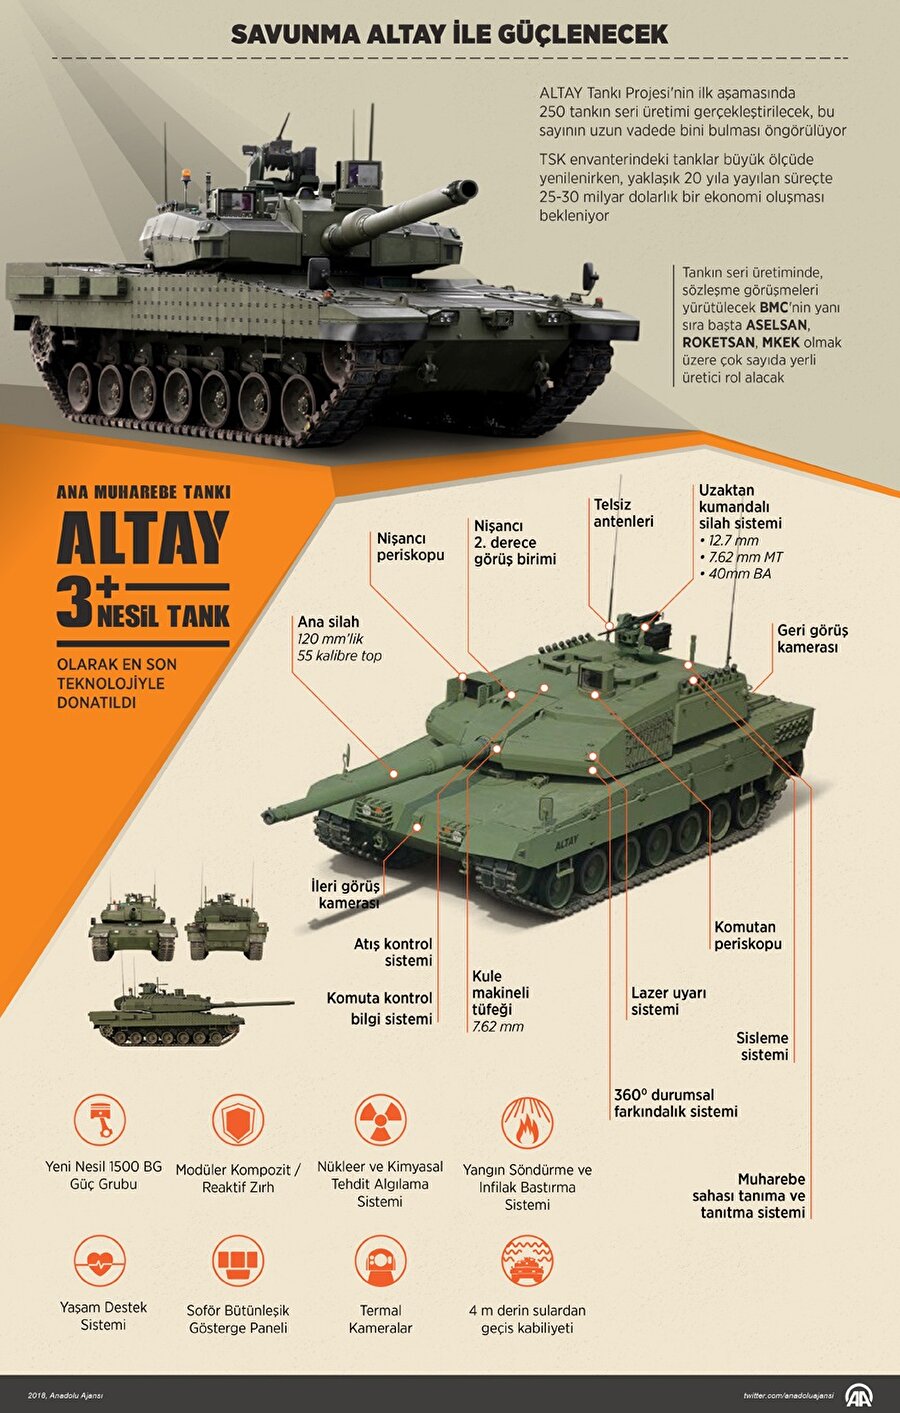 Altay Tankı'nın ayrıntılarını gösteren infografik.